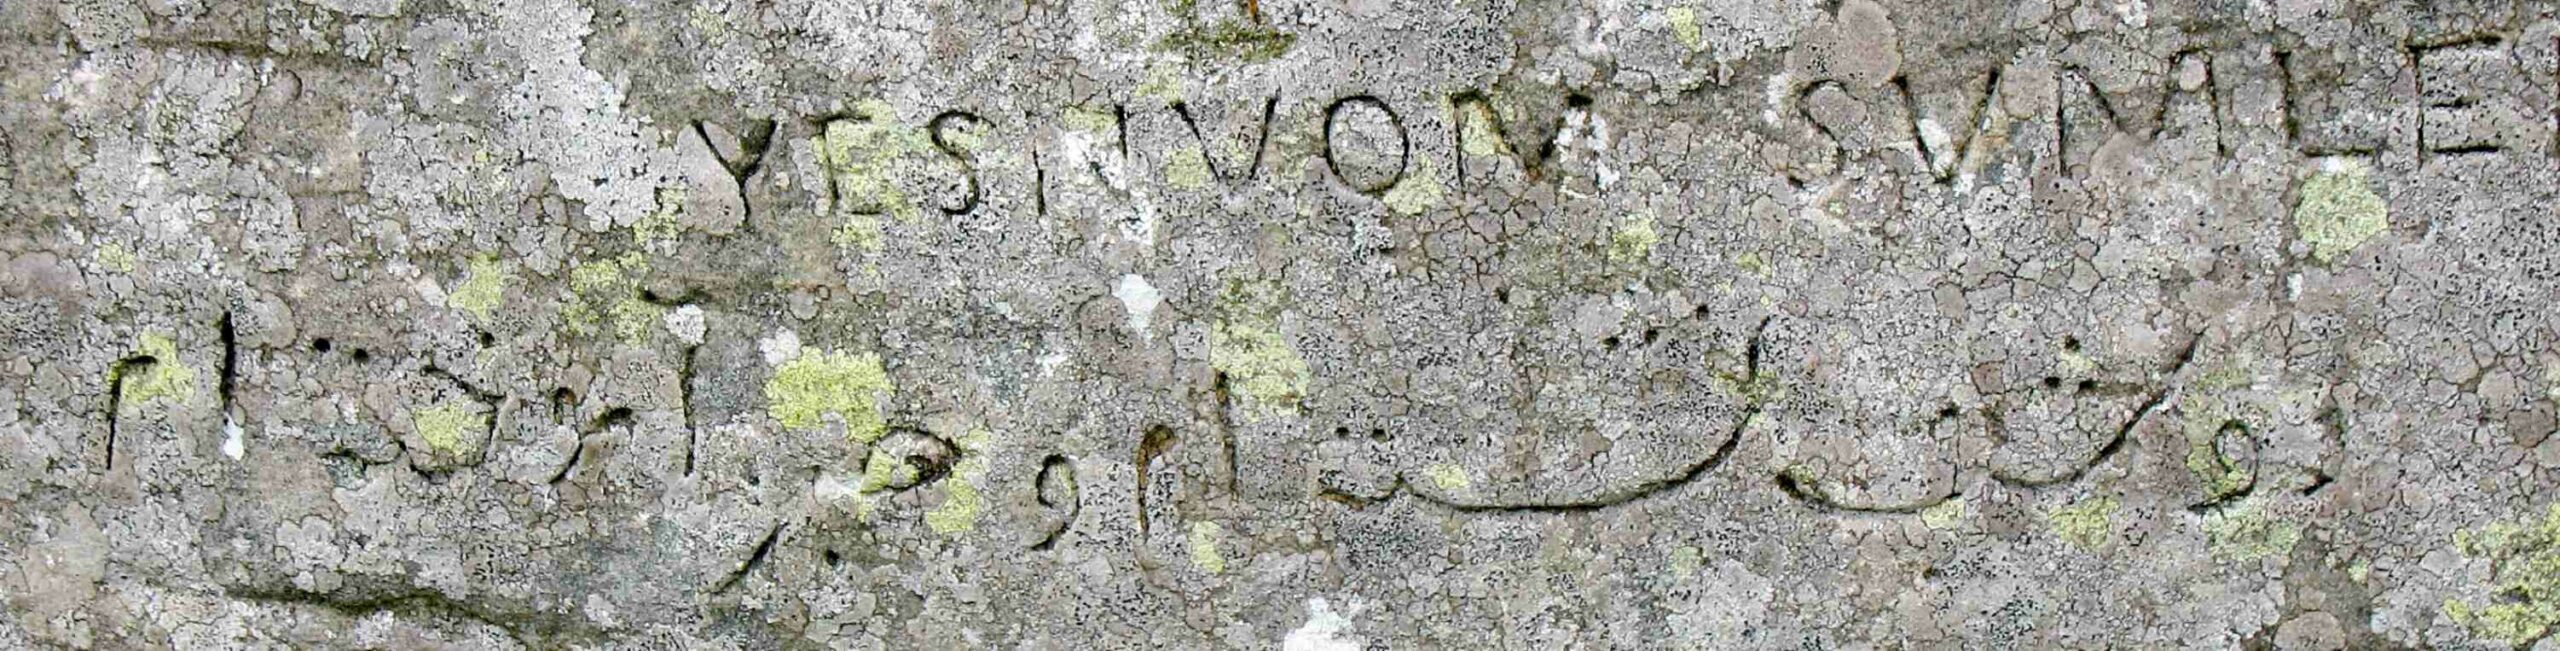 Ez egy perzsa kalligráfiás felirat a Dwarfie Stane-en. William Henry Mounsey, Castletown és Rockcliffe kapitánya hagyta ott, aki 1850-ben itt táborozott, és ez áll: "Két éjszakát ültem, és türelmet tanultam". A perzsa fölött a neve latinul visszafelé írva.